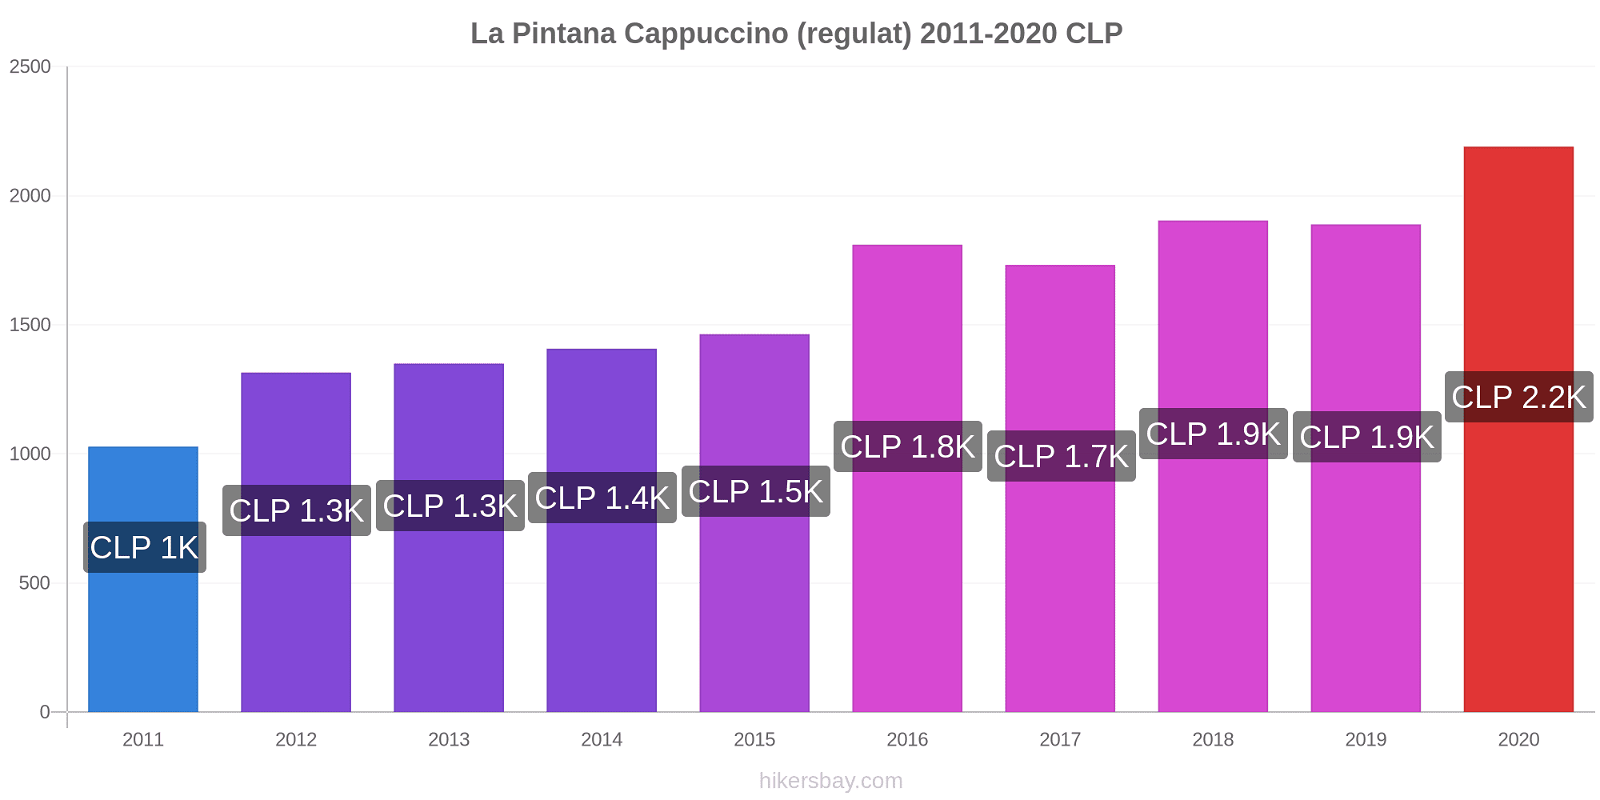 La Pintana modificări de preț Cappuccino (regulat) hikersbay.com